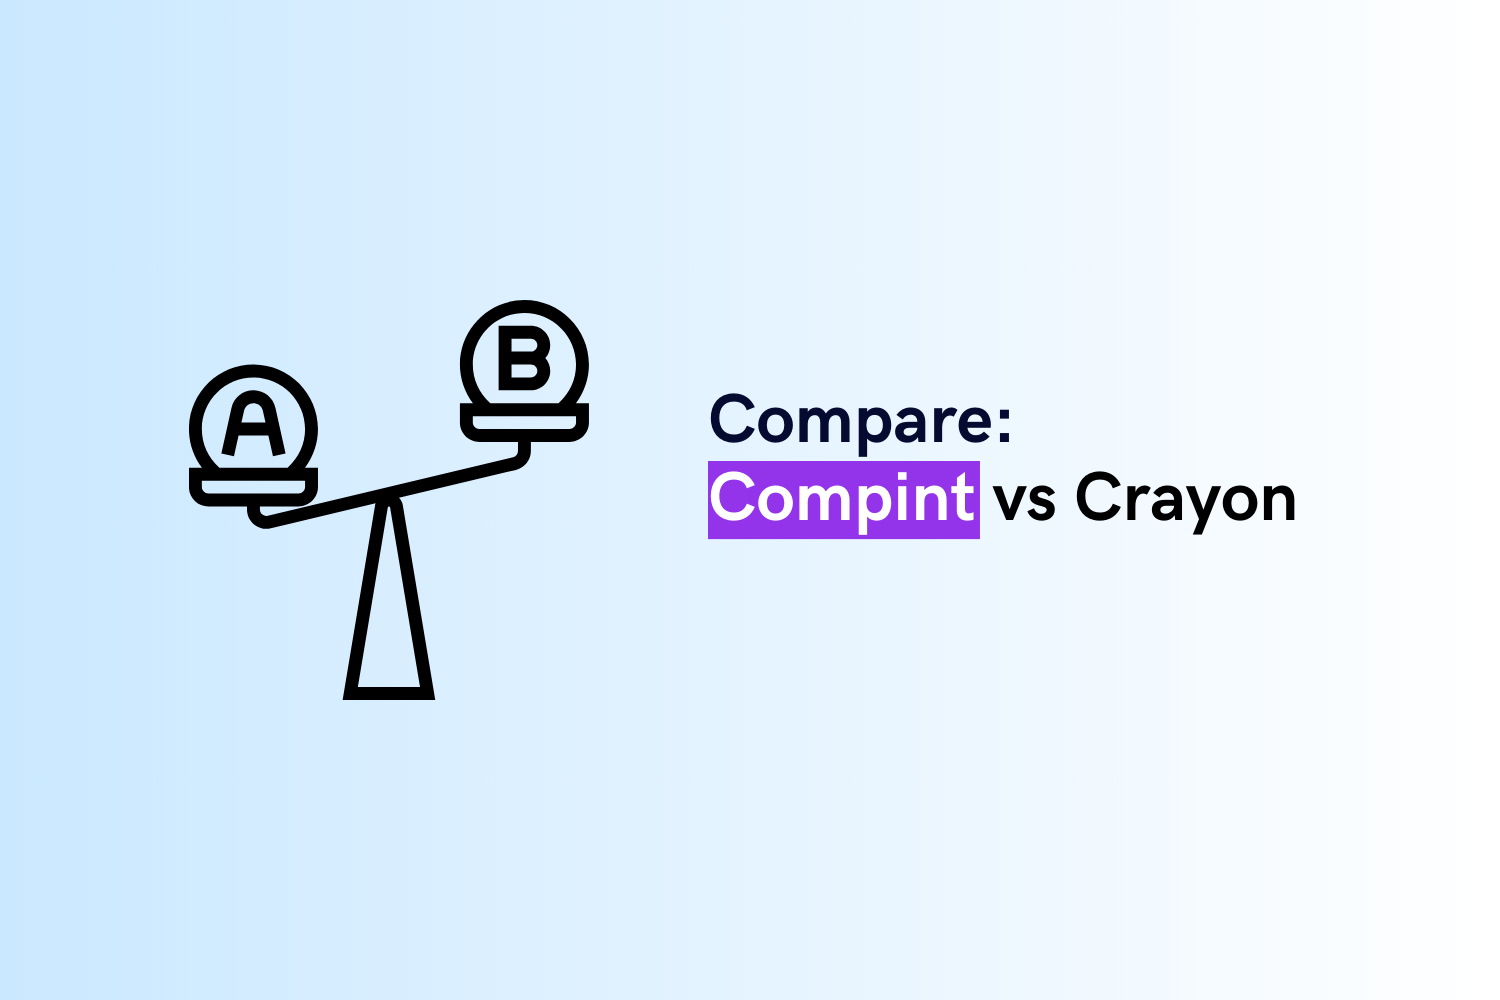 Compint vs Crayon